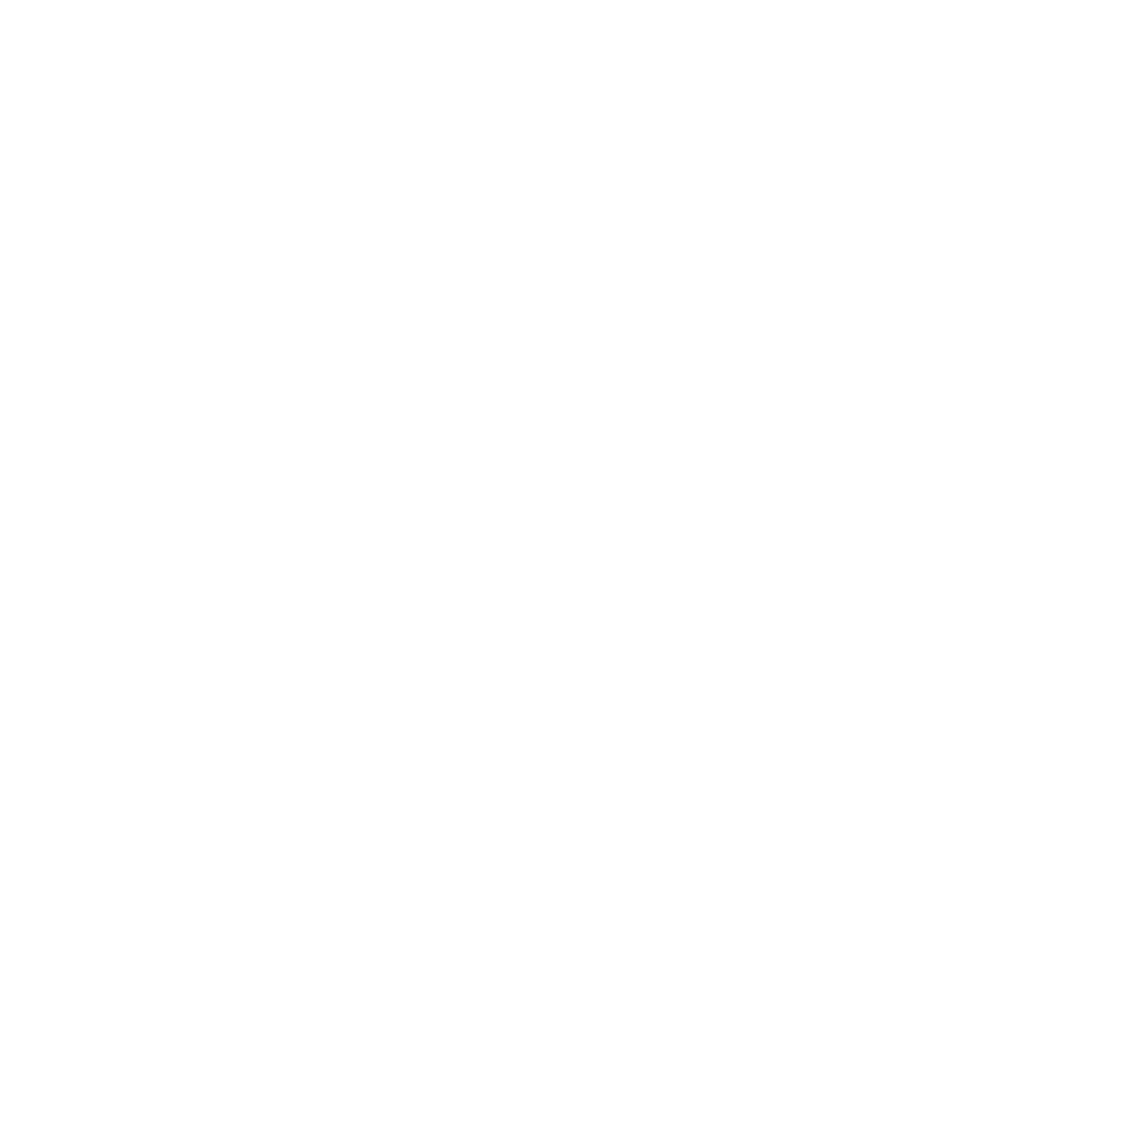 Meadowlark Guide Co